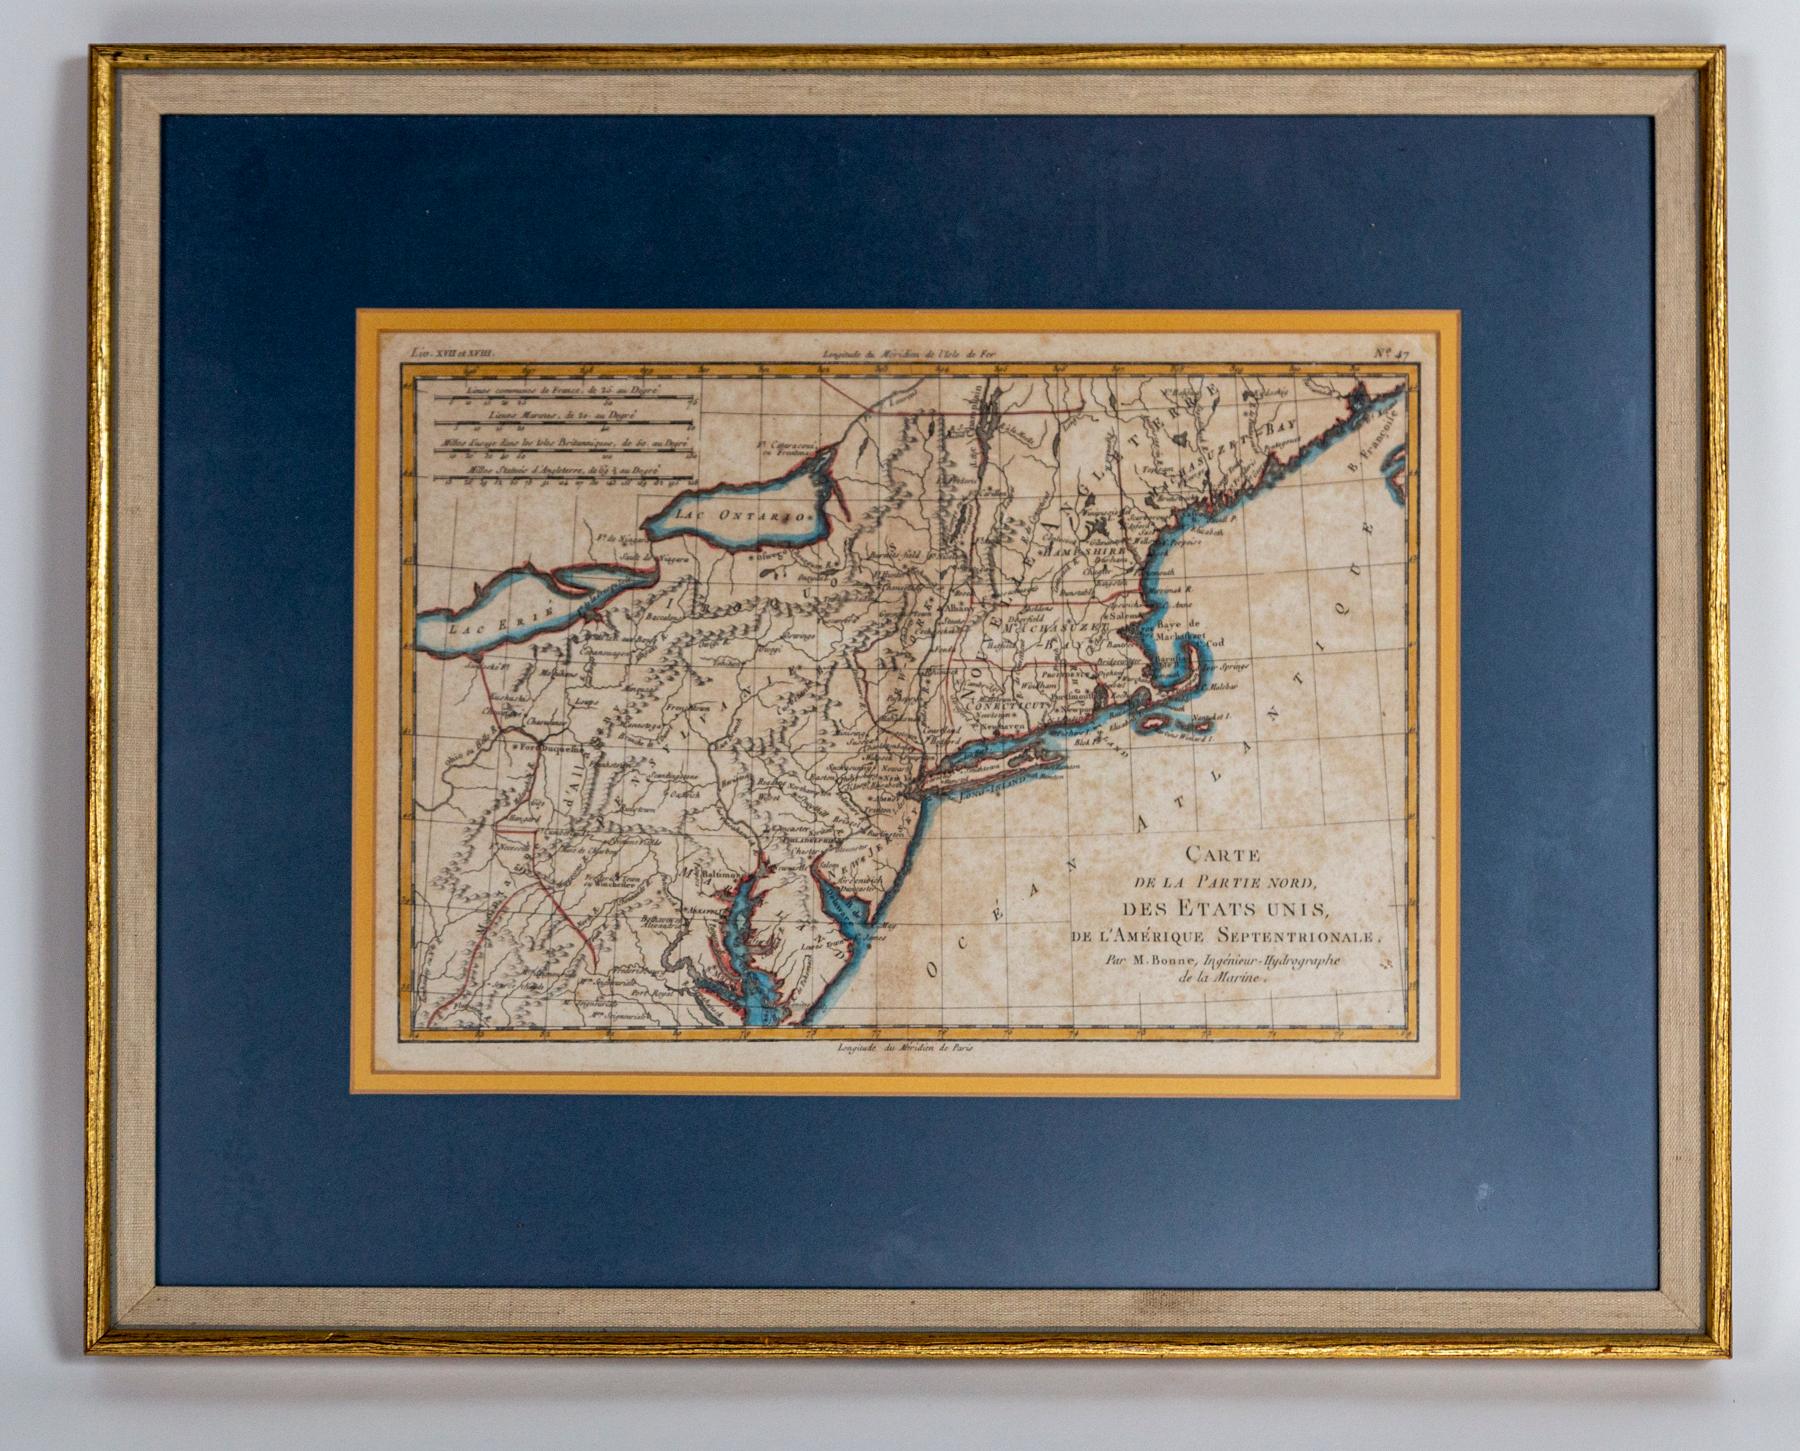 Handkolorierte französische Karte, Carte de la Partie Nord, des Etats Unis, de l'Amérique Septentrionale, Ende 18. Jahrhundert. Eine französische Karte von Neuengland, die am Ende des Revolutionskriegs aus dem Atlas von Raynal veröffentlicht wurde.